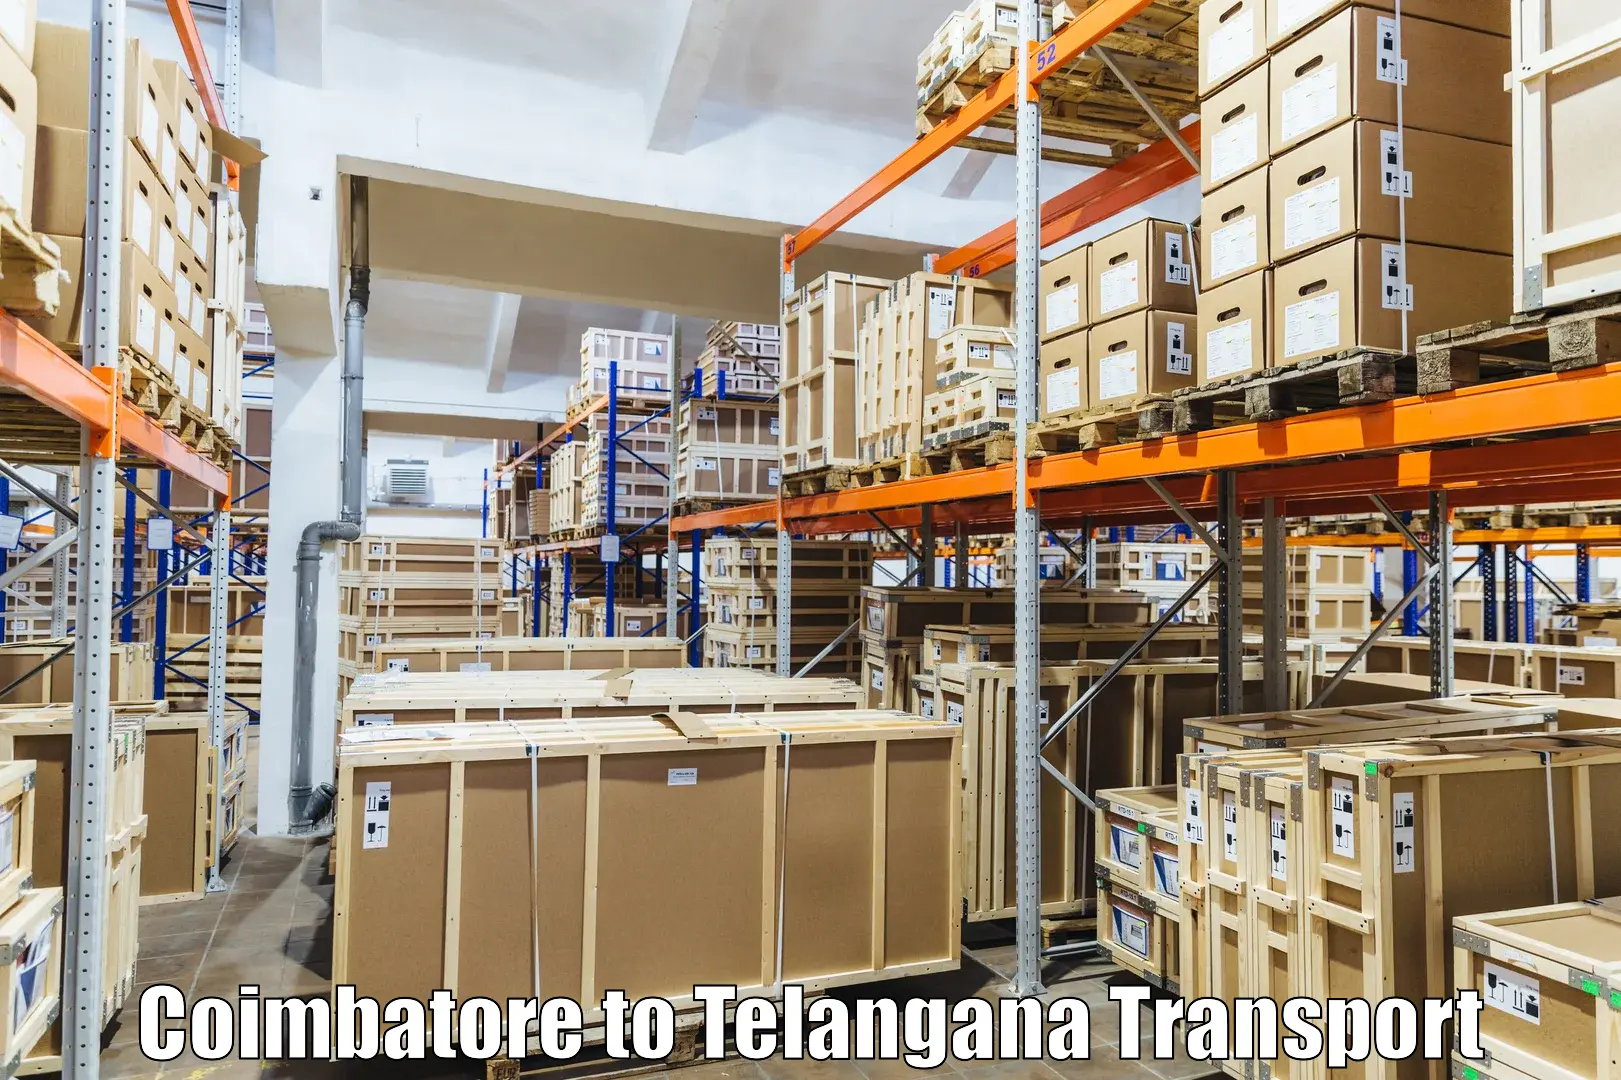 Cargo transportation services in Coimbatore to Netrang